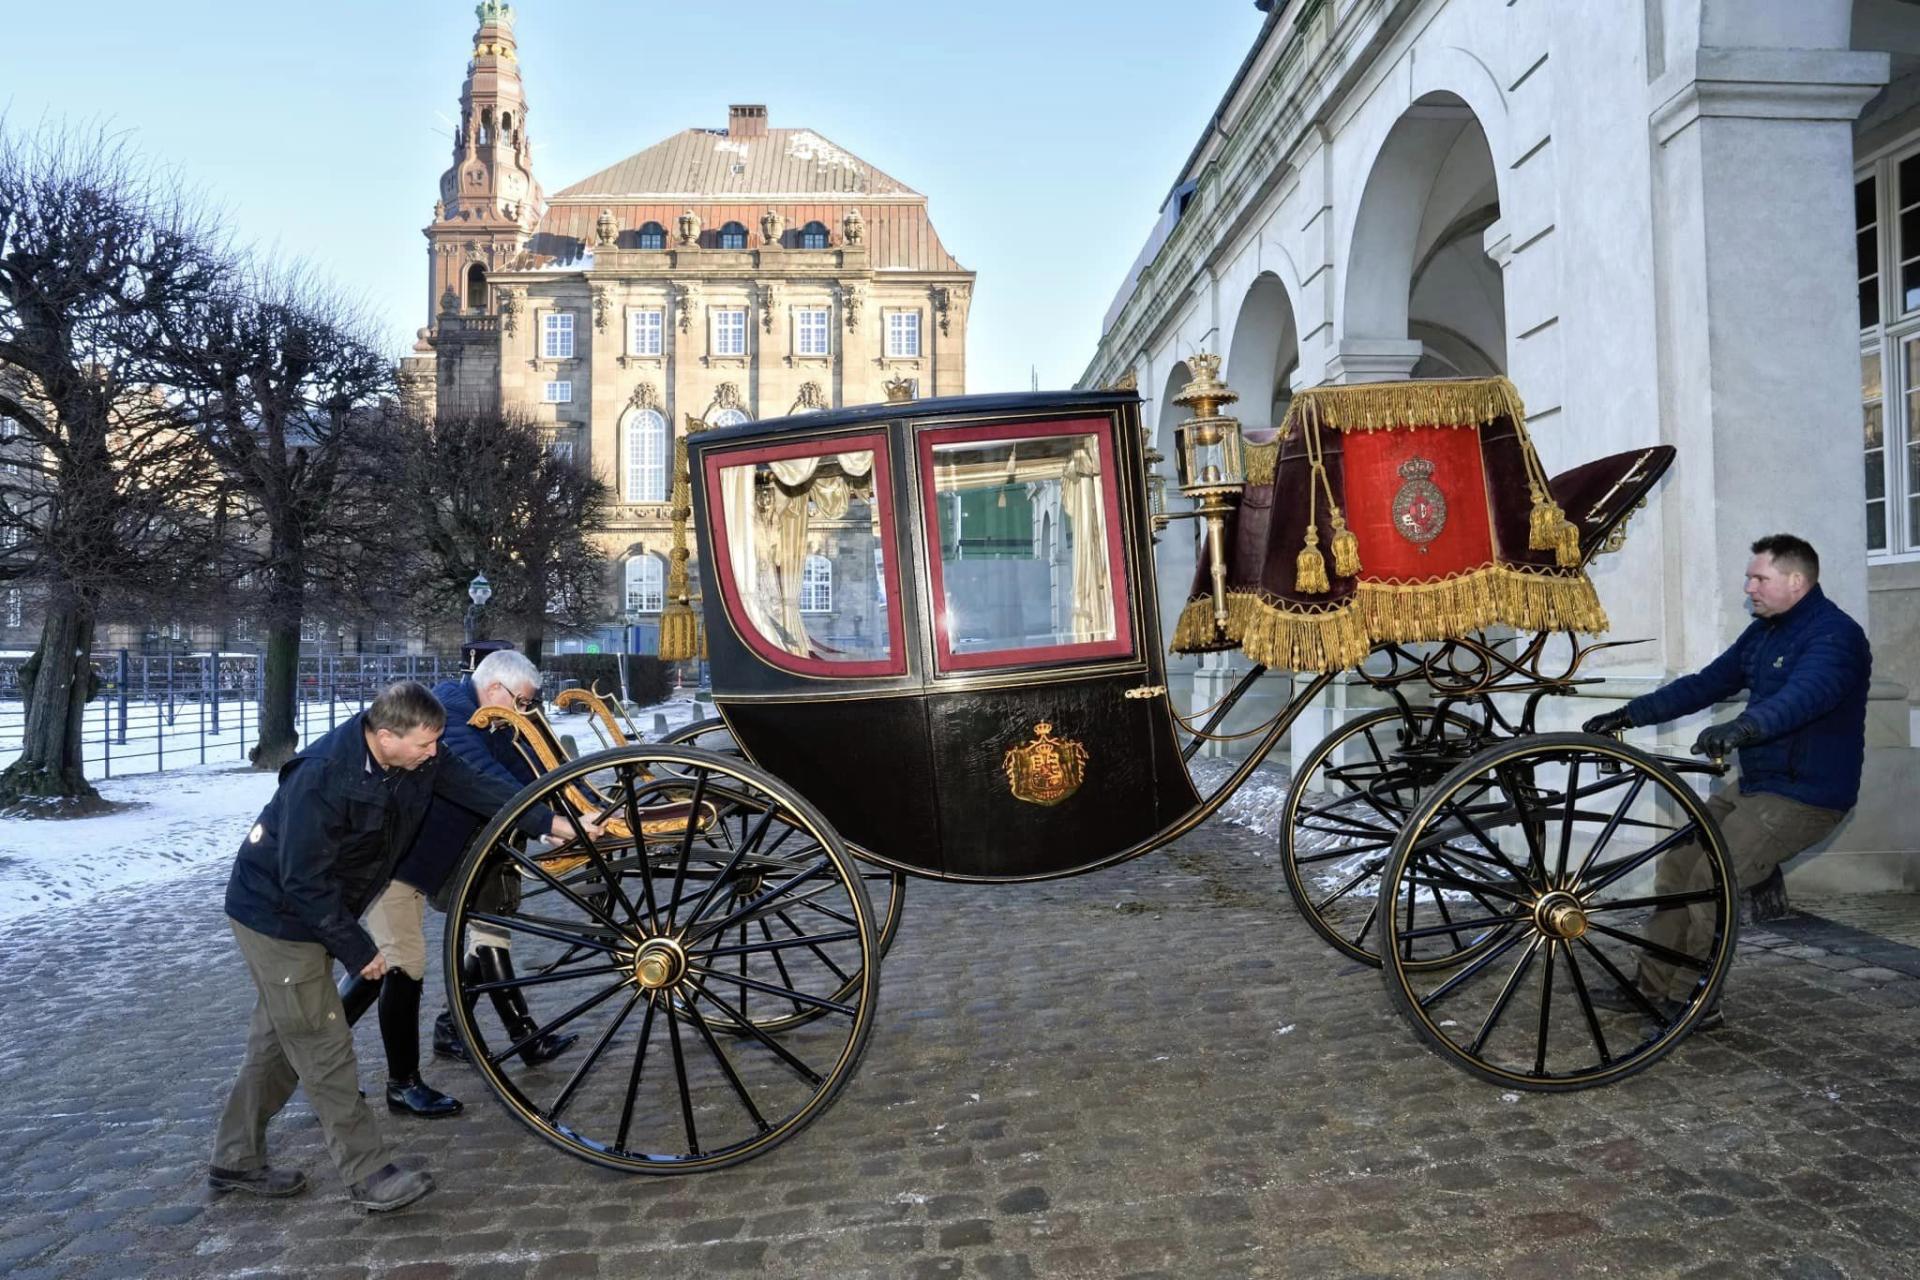 Le carrosse qui sera utilisé pour le couple héritier et la reine Margrethe  II @Det danske kongehus